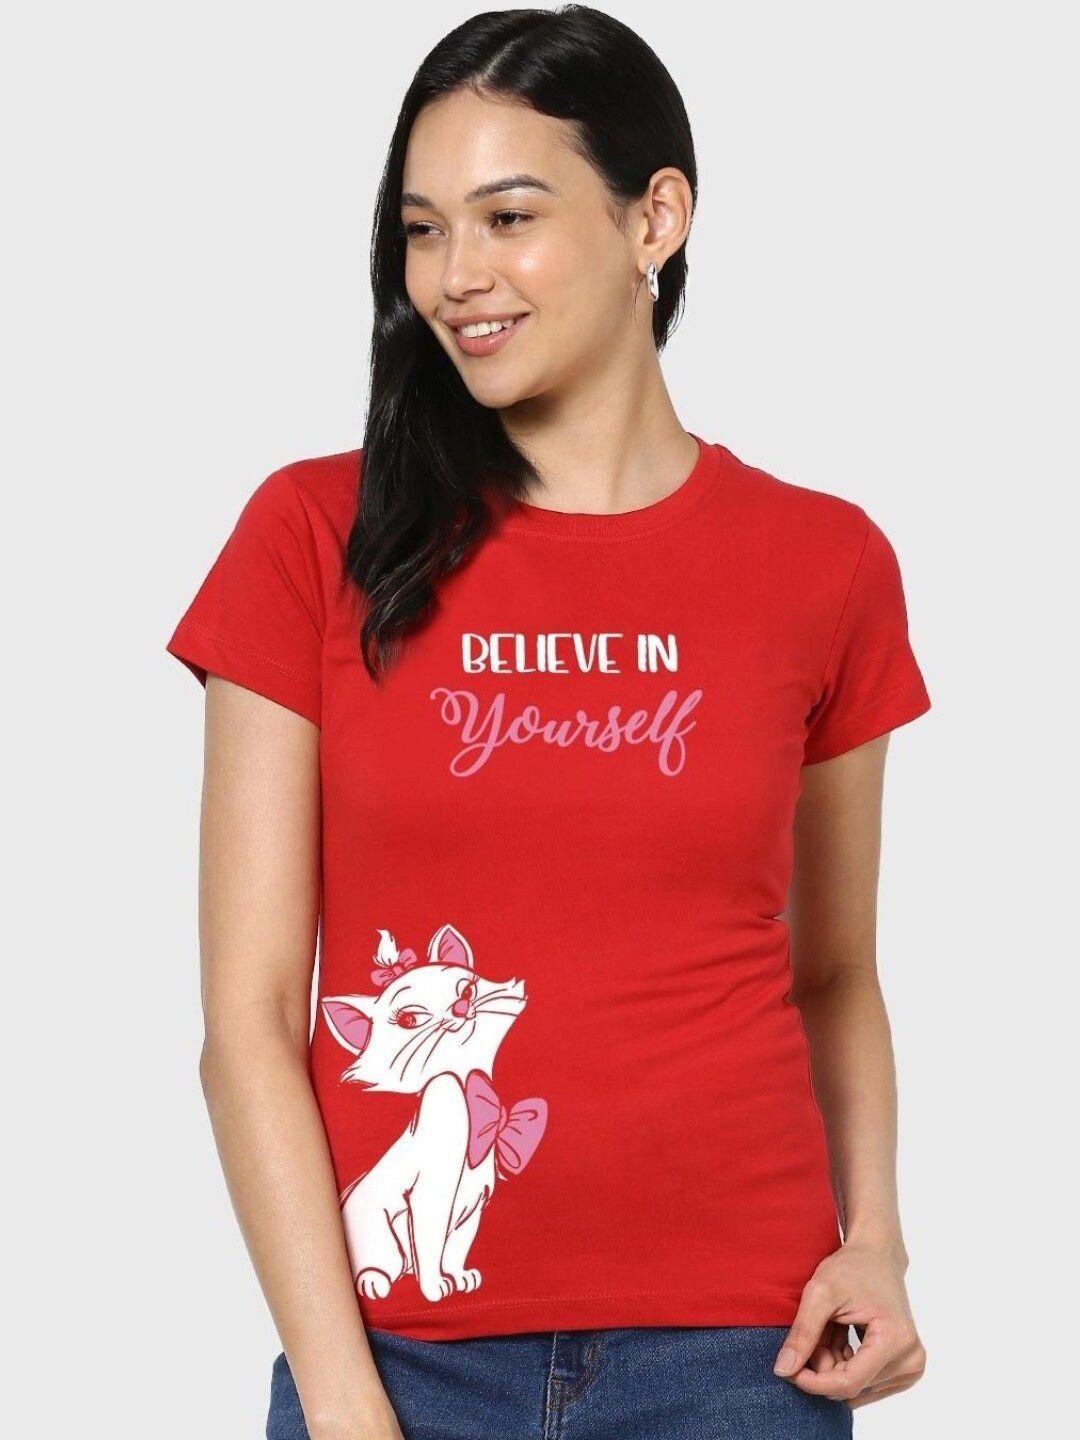 bewakoof-women-believe-cat-graphic-printed-t-shirt